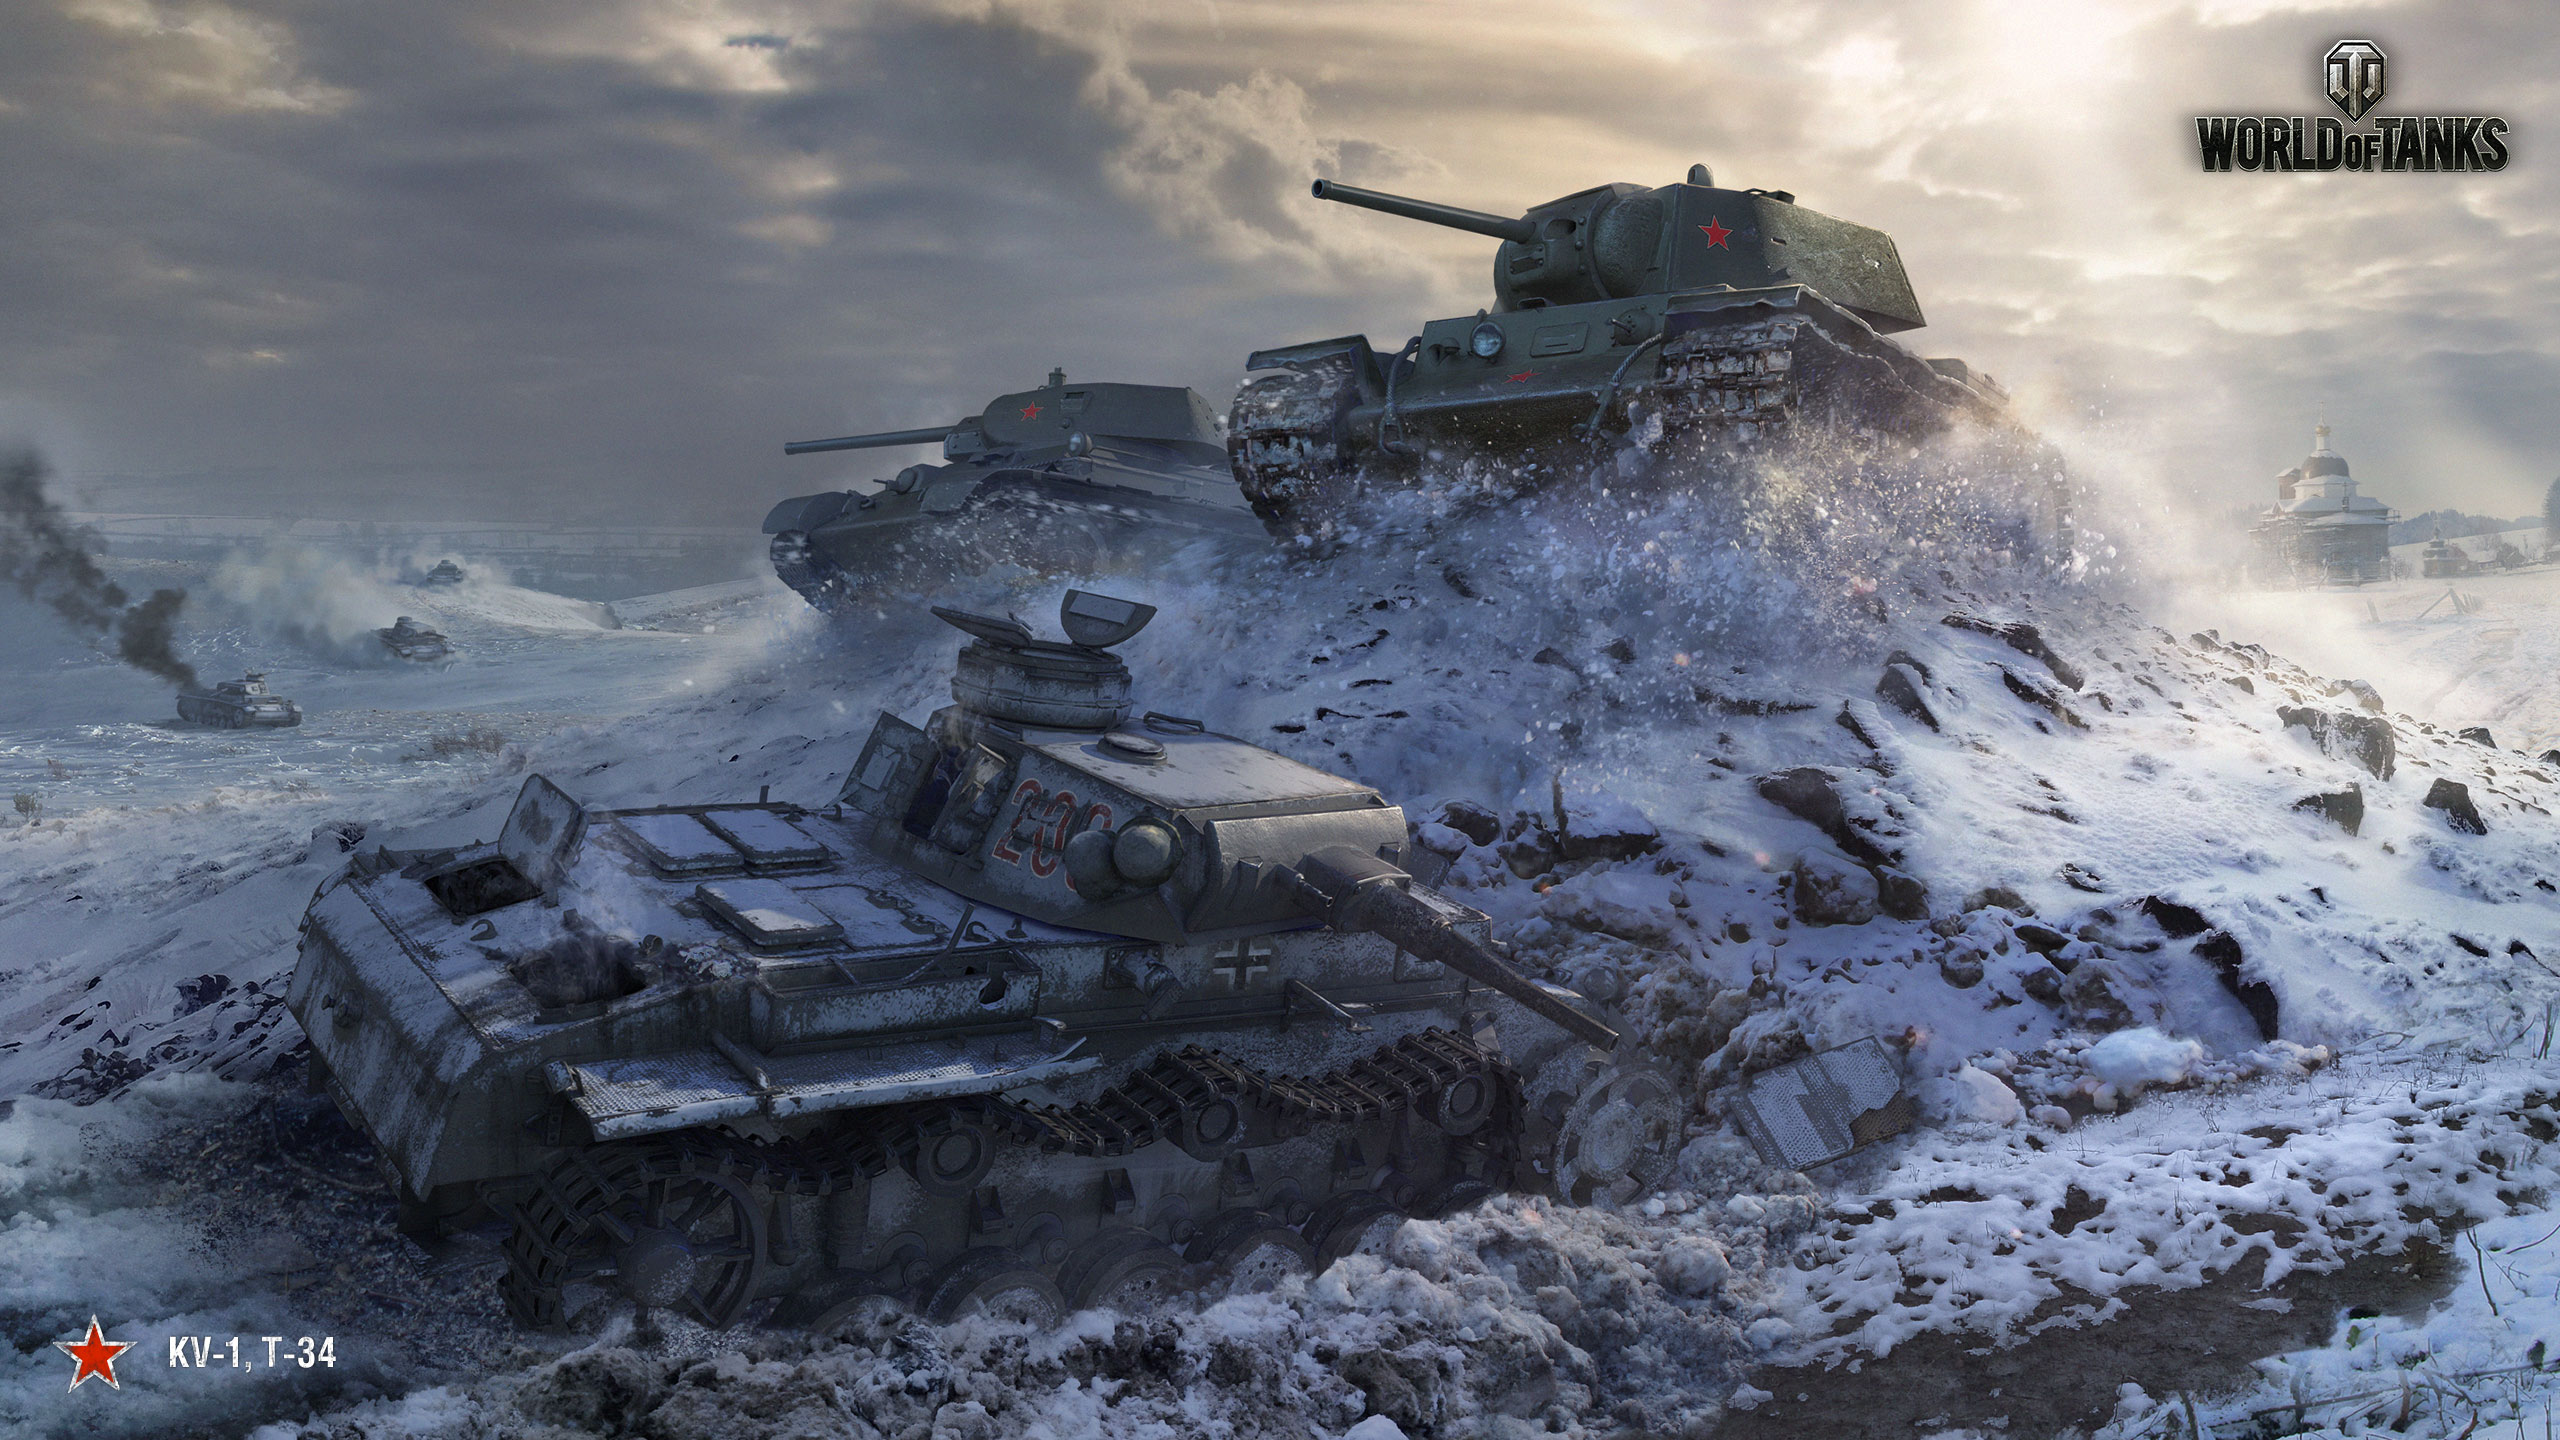 World of Tanks Christmas Wallpaper 2014  Tăng Media World of Tanks các  video và tác phẩm hay nhất